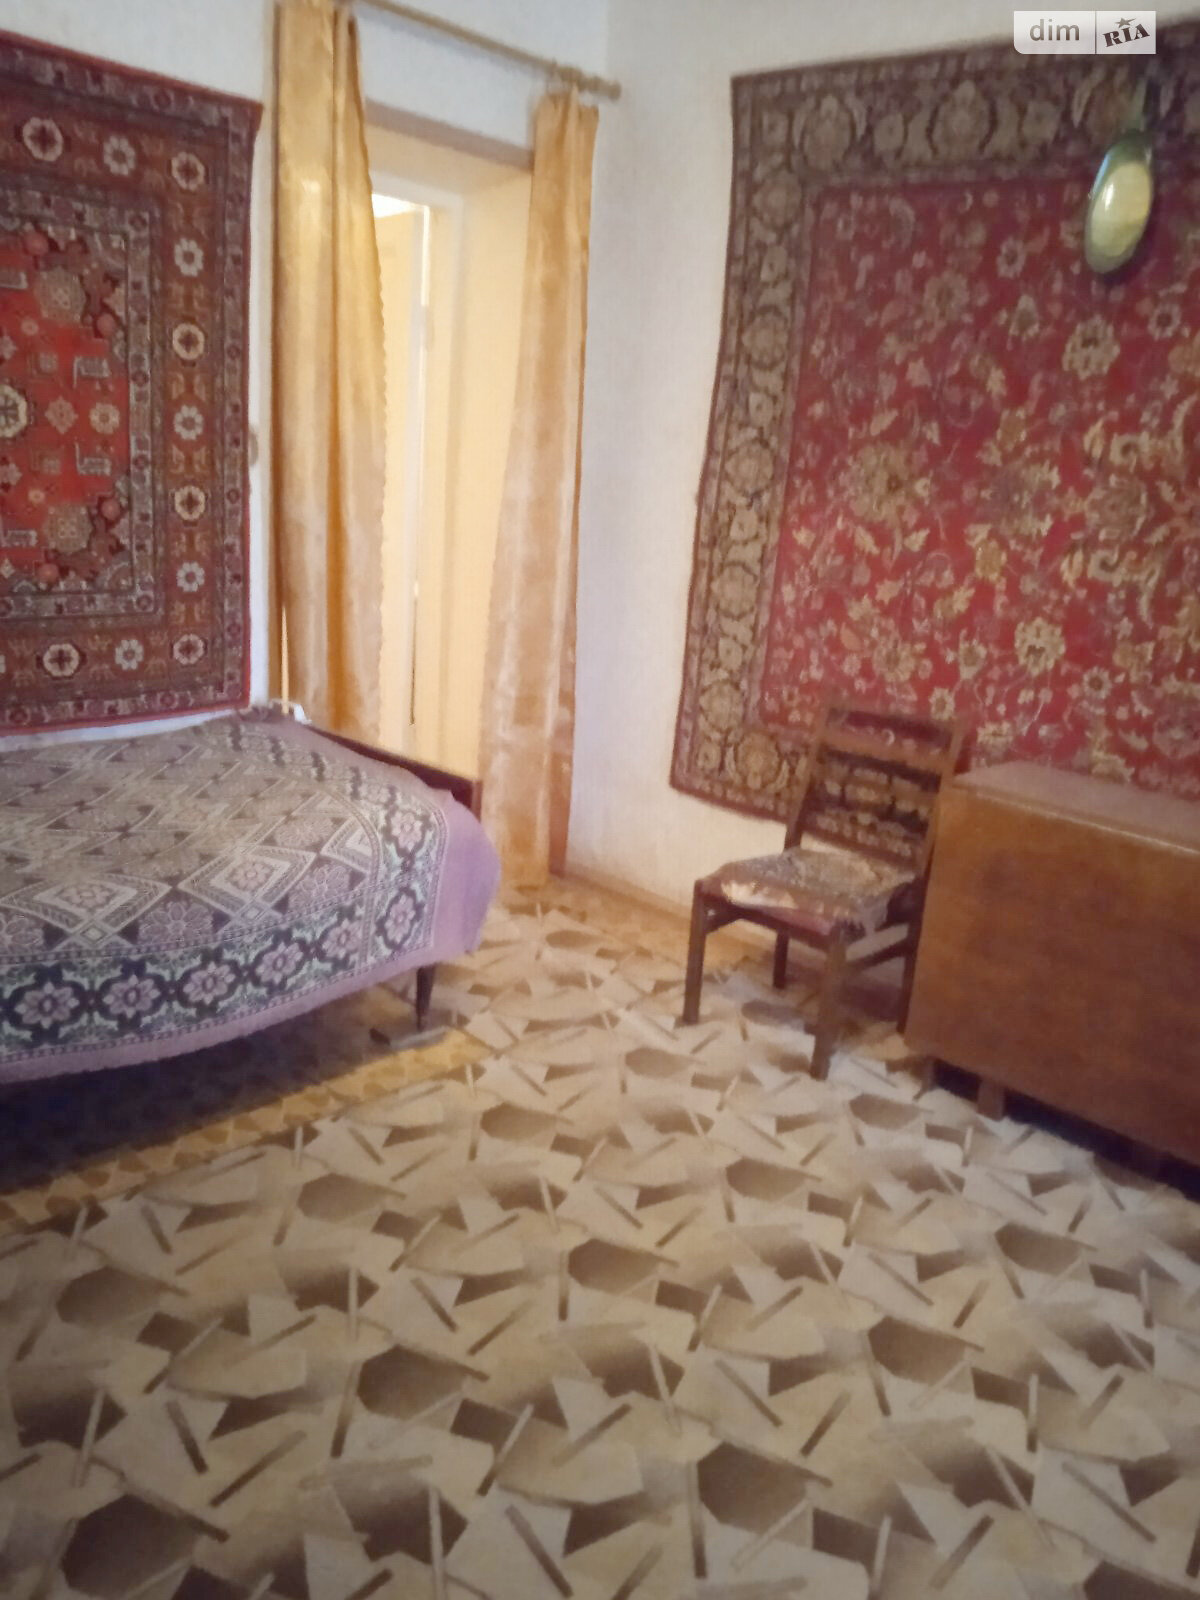 Продажа части дома в Одессе, переулок Ступенчатый, 2 комнаты фото 1